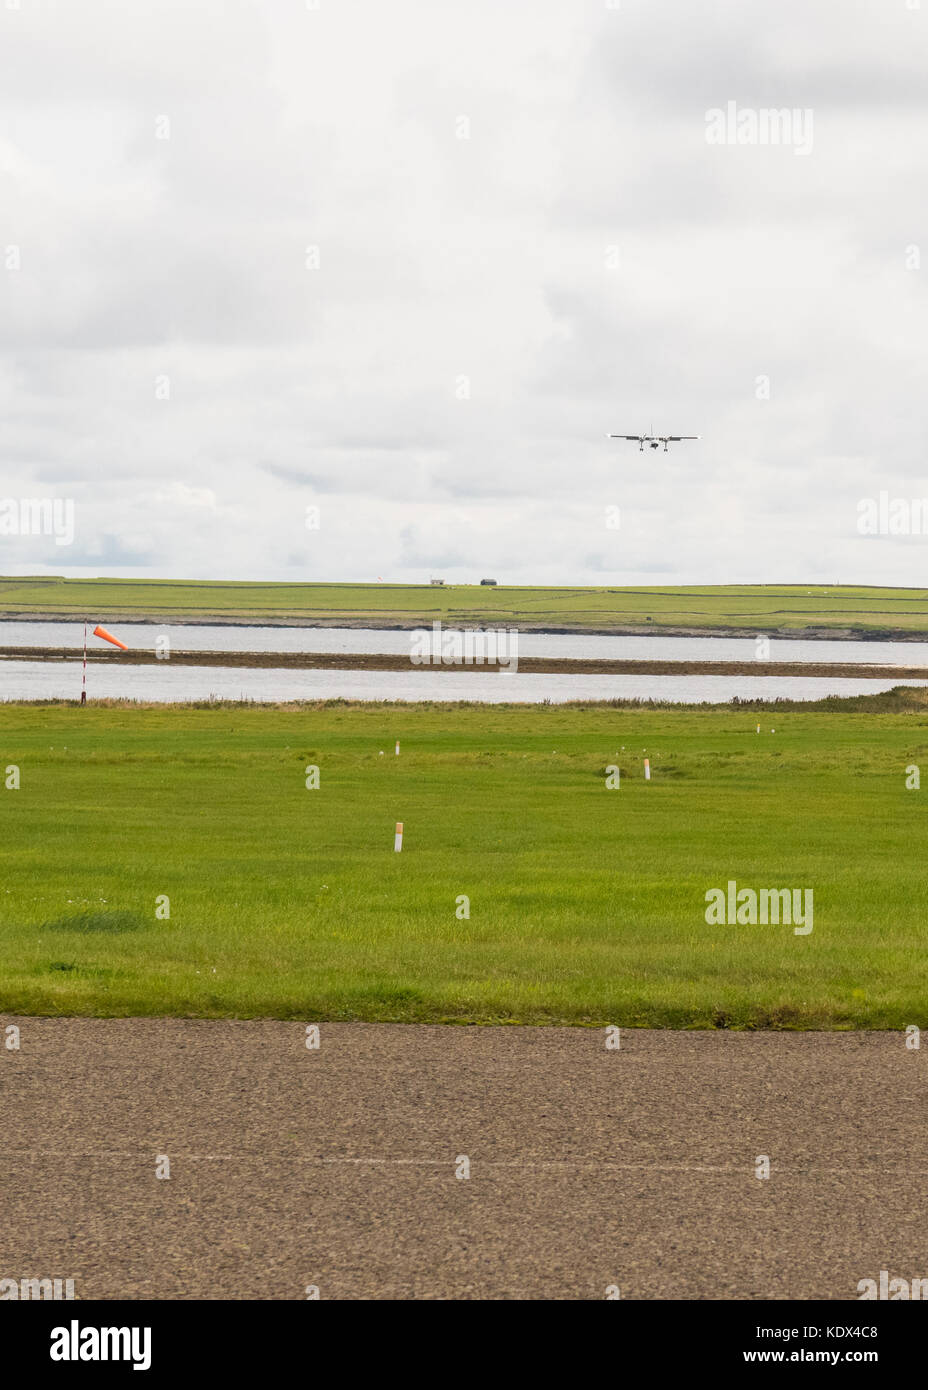 Loganair-Flugzeug, das vom Flughafen Papa Westray am Horizont, Orkney-Inseln, Schottland, Großbritannien, in Richtung Westray Flughafen fliegt Stockfoto